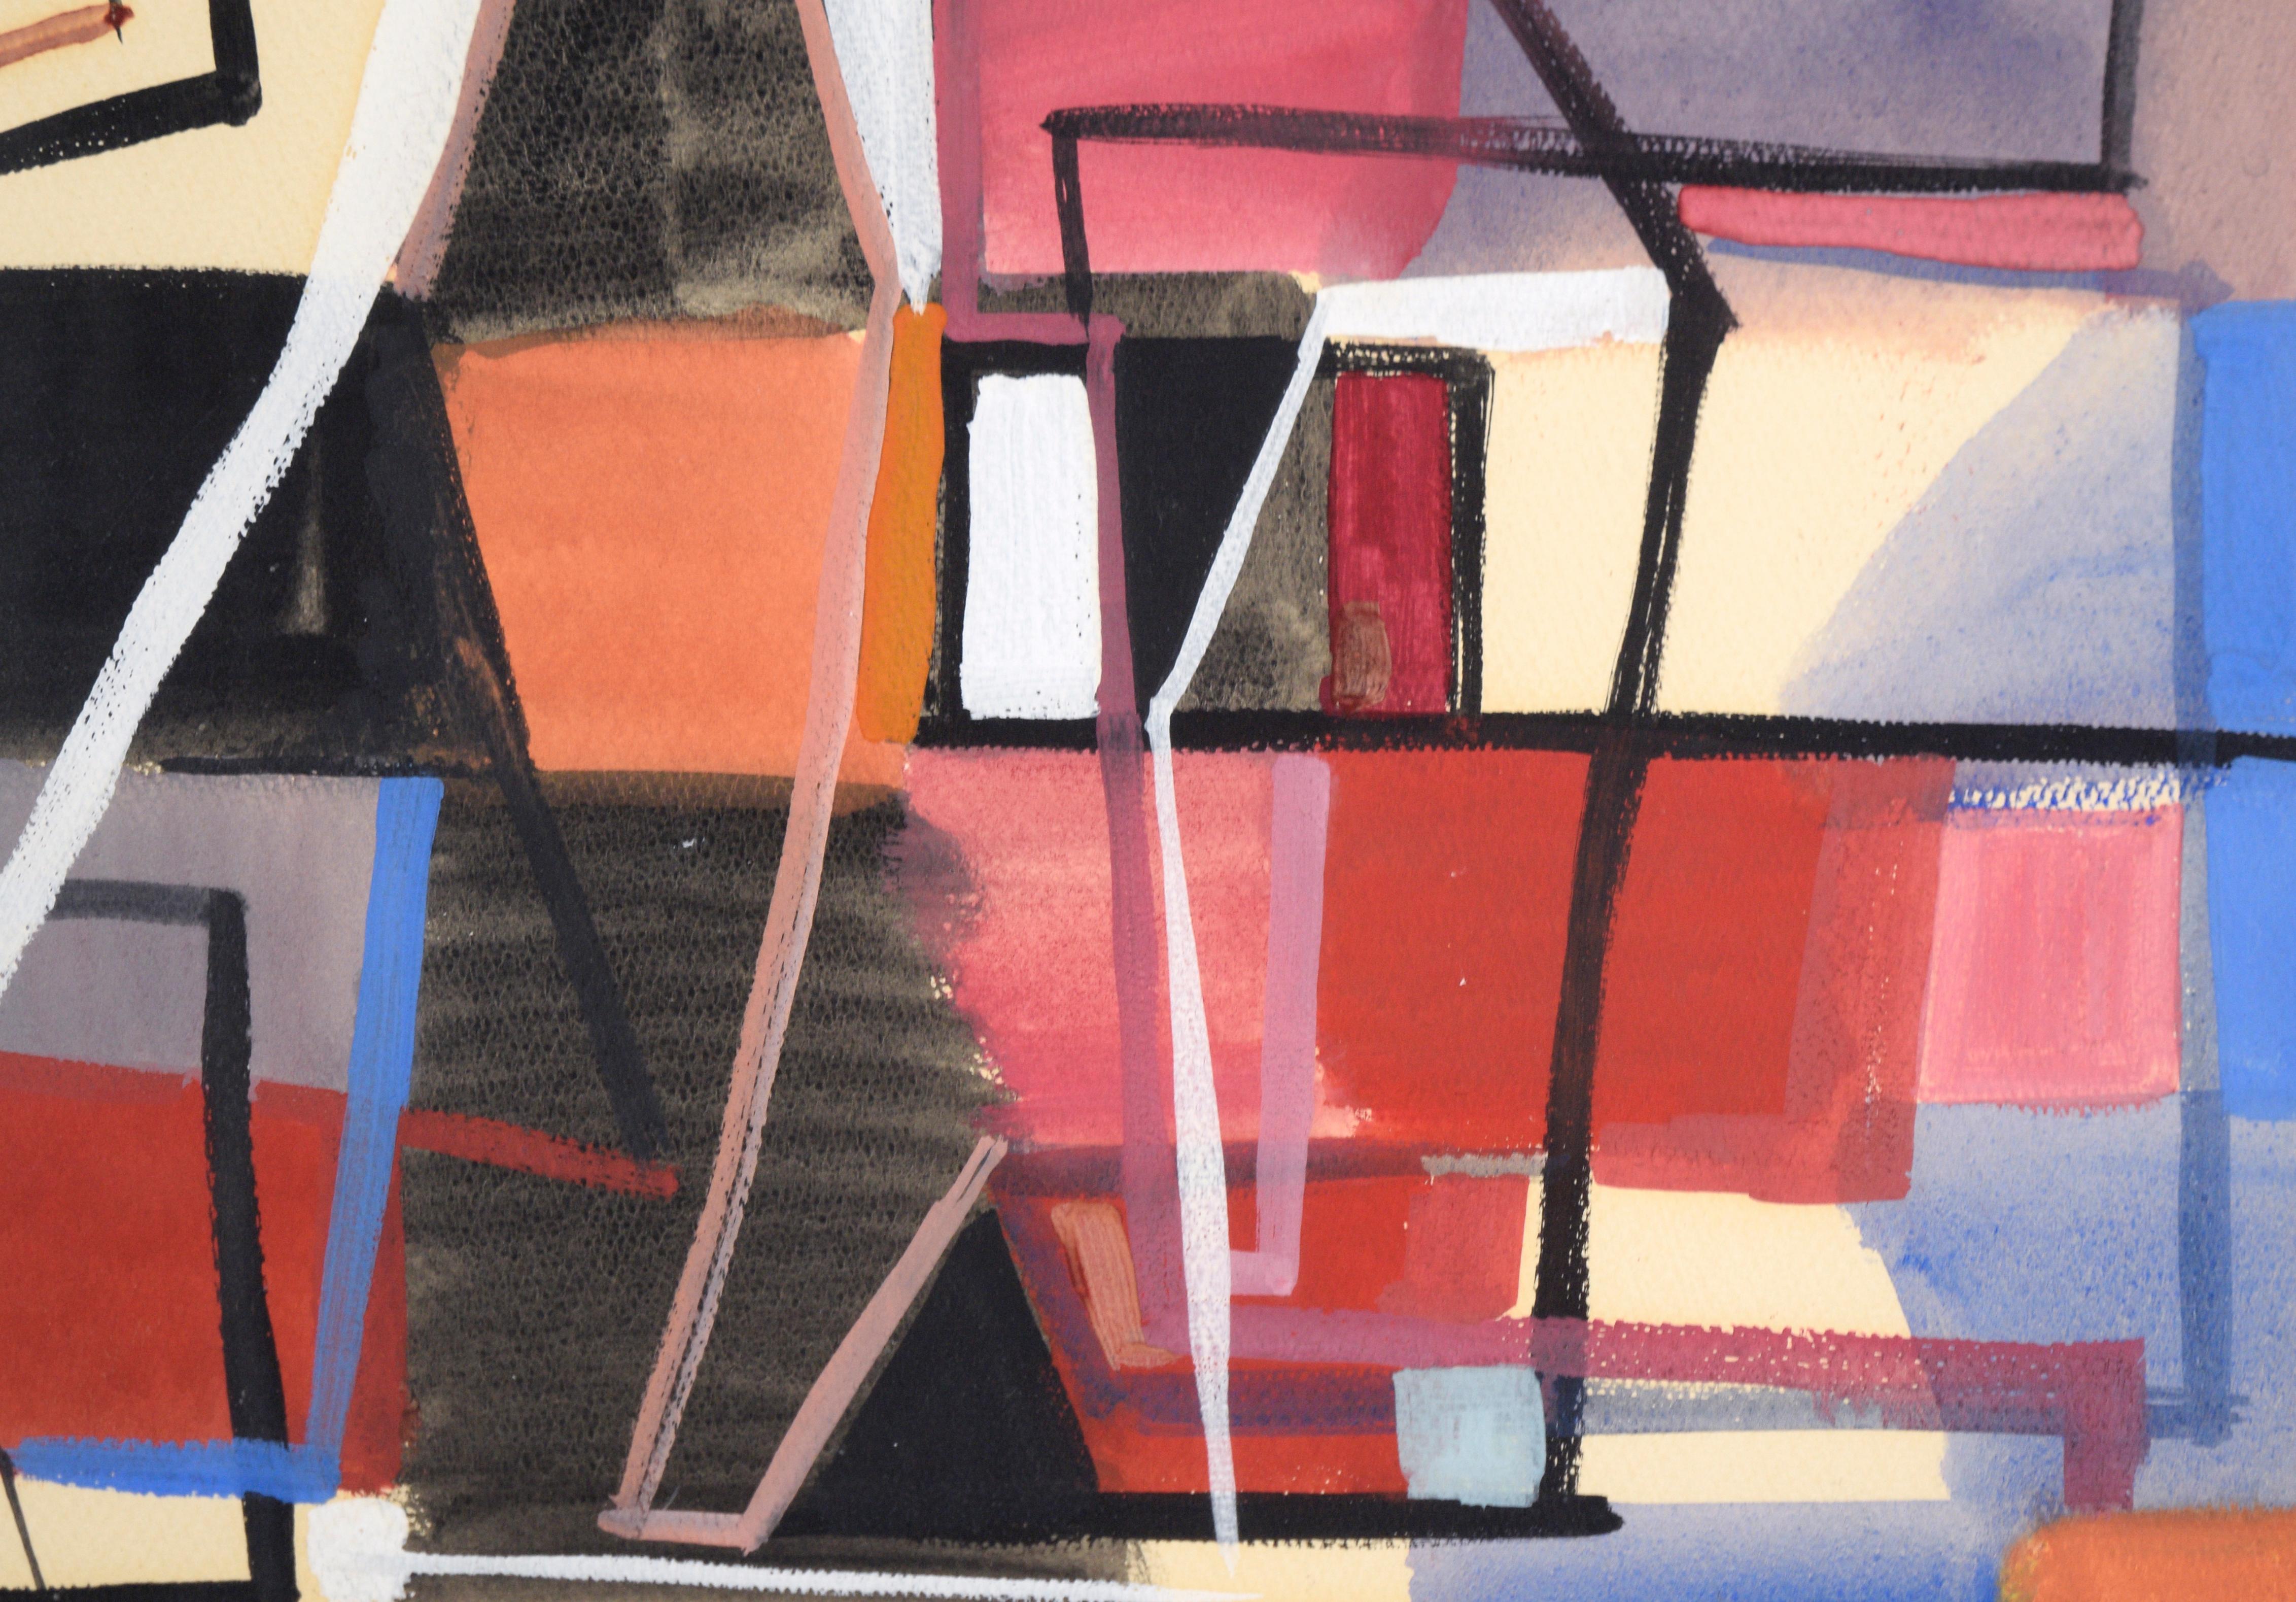 Kräftige und ausgewogene abstrakte Komposition von Russell Green (Amerikaner, 1910-1986). Dieses in Greens charakteristischem Stil gefertigte Werk zeichnet sich durch ein ausgewogenes Zusammenspiel von Formen und Farben aus. Schwarze, rote, blaue